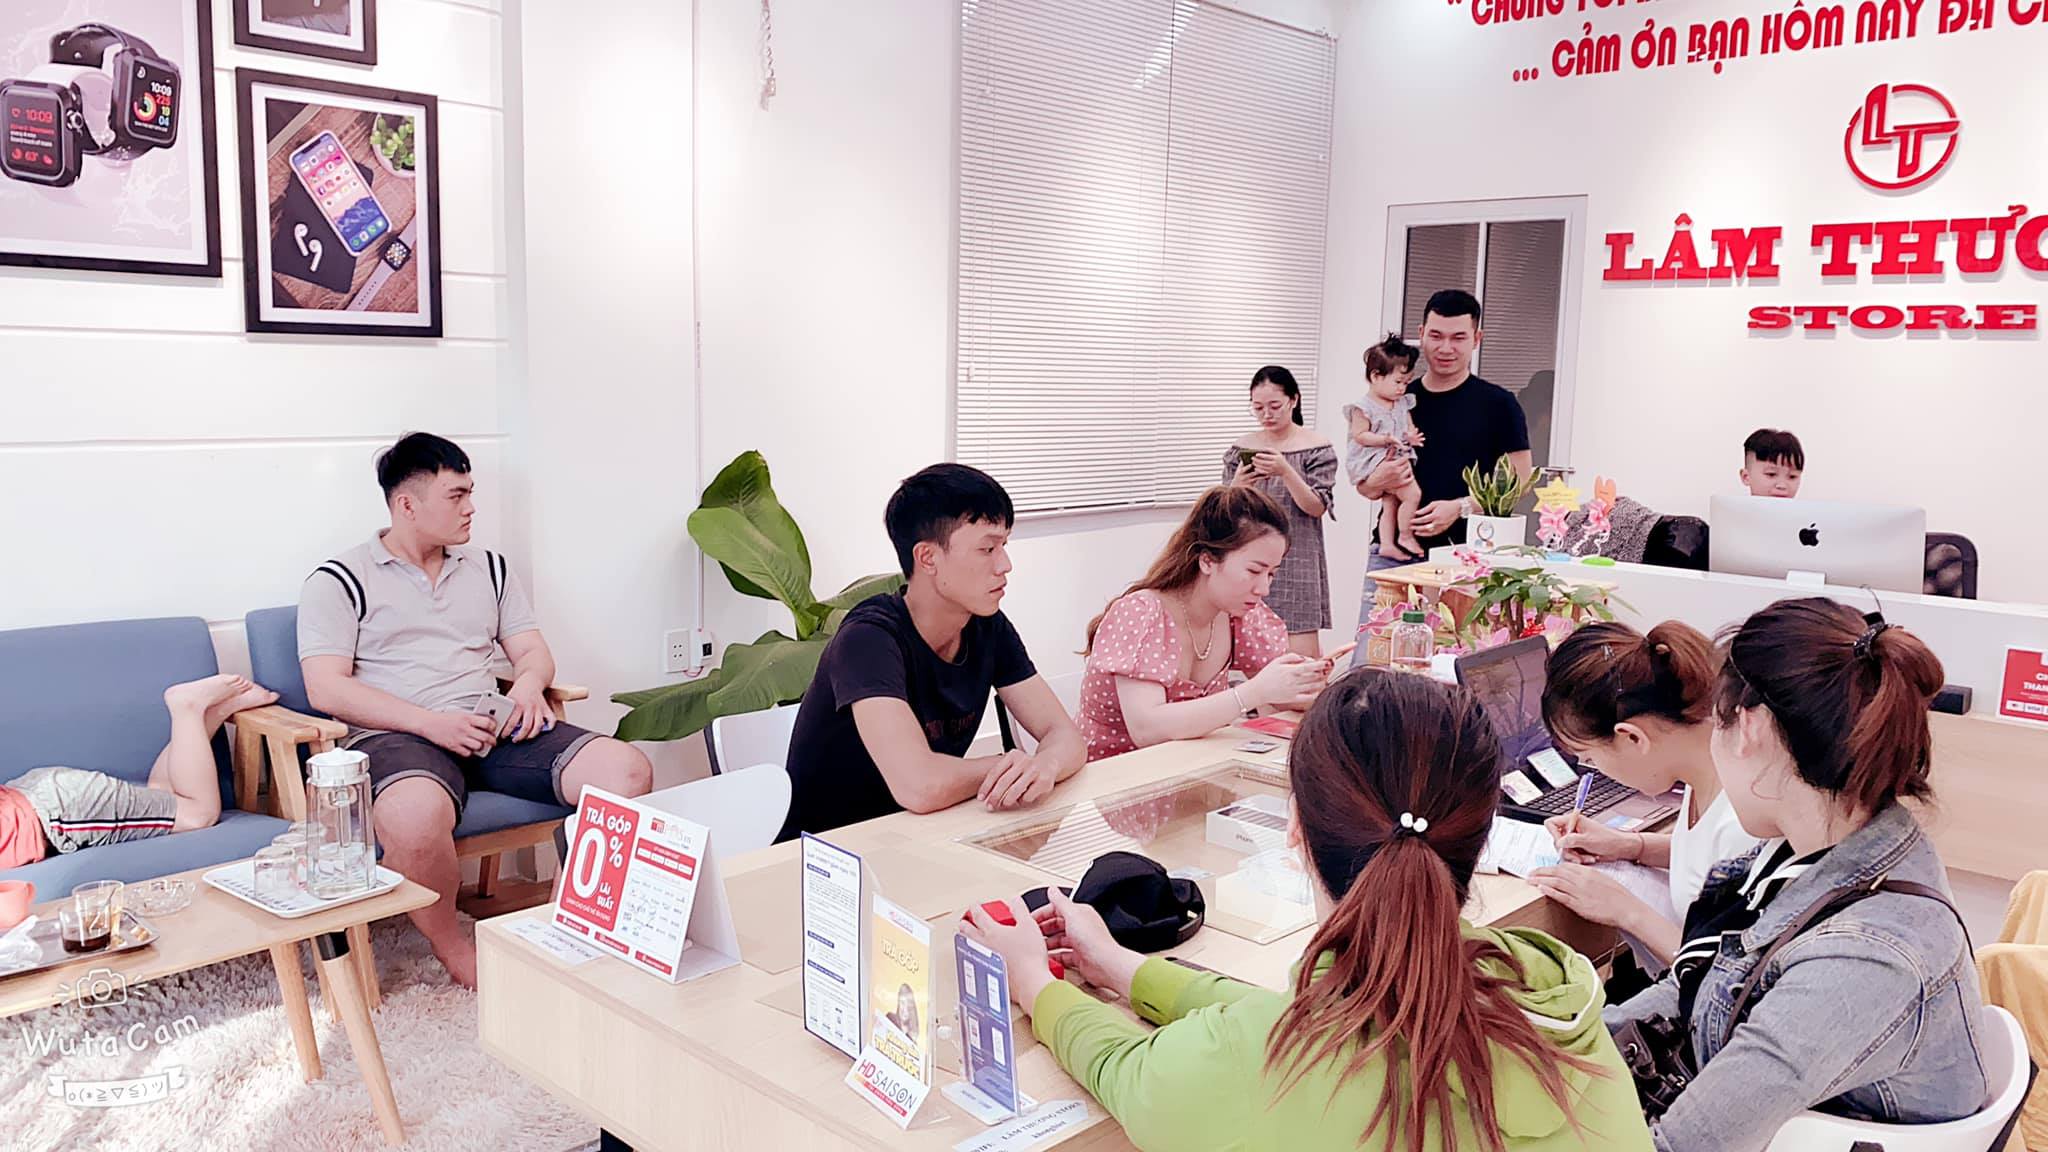 Lâm Thương Store - điểm mua Iphone uy tín ở Đà Nẵng